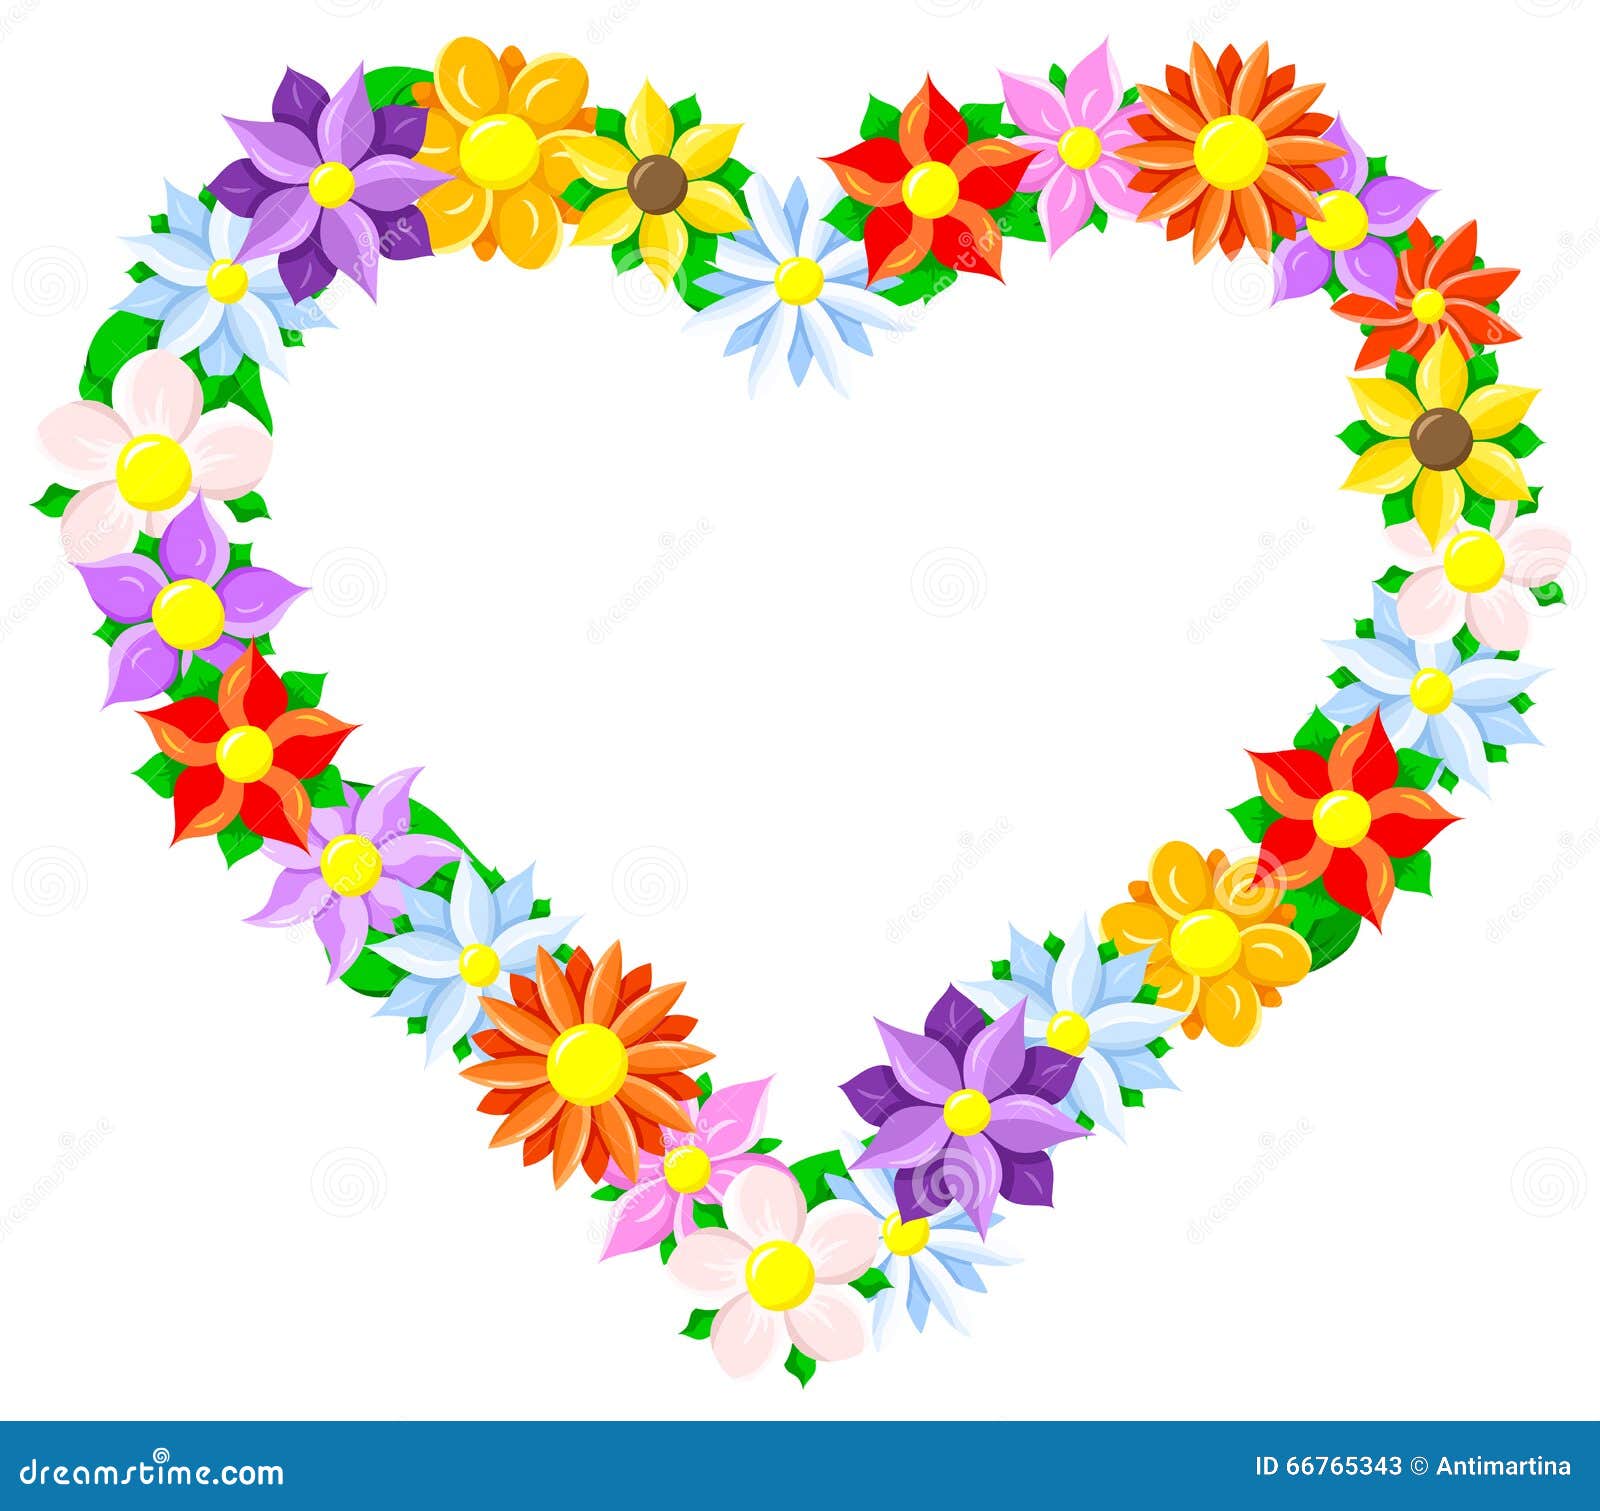 Download Flower border heart stock vector. Illustration of heart - 66765343